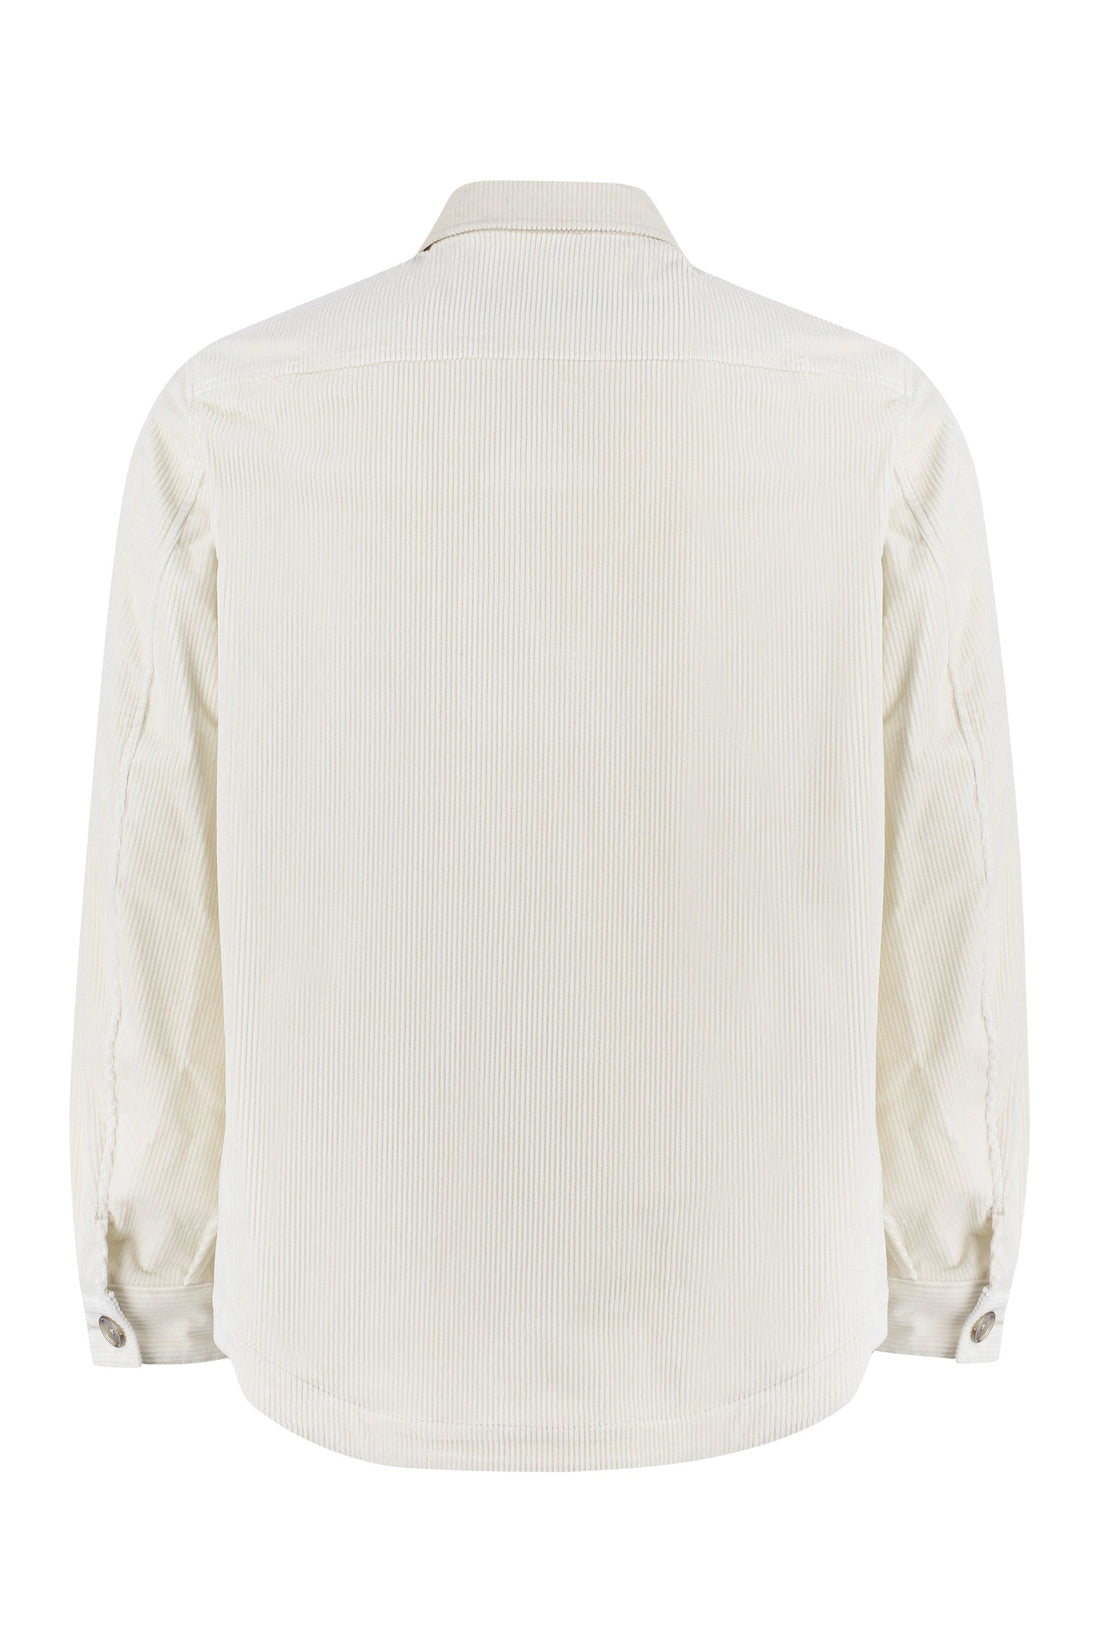 BOSS-OUTLET-SALE-Cotton overshirt-ARCHIVIST